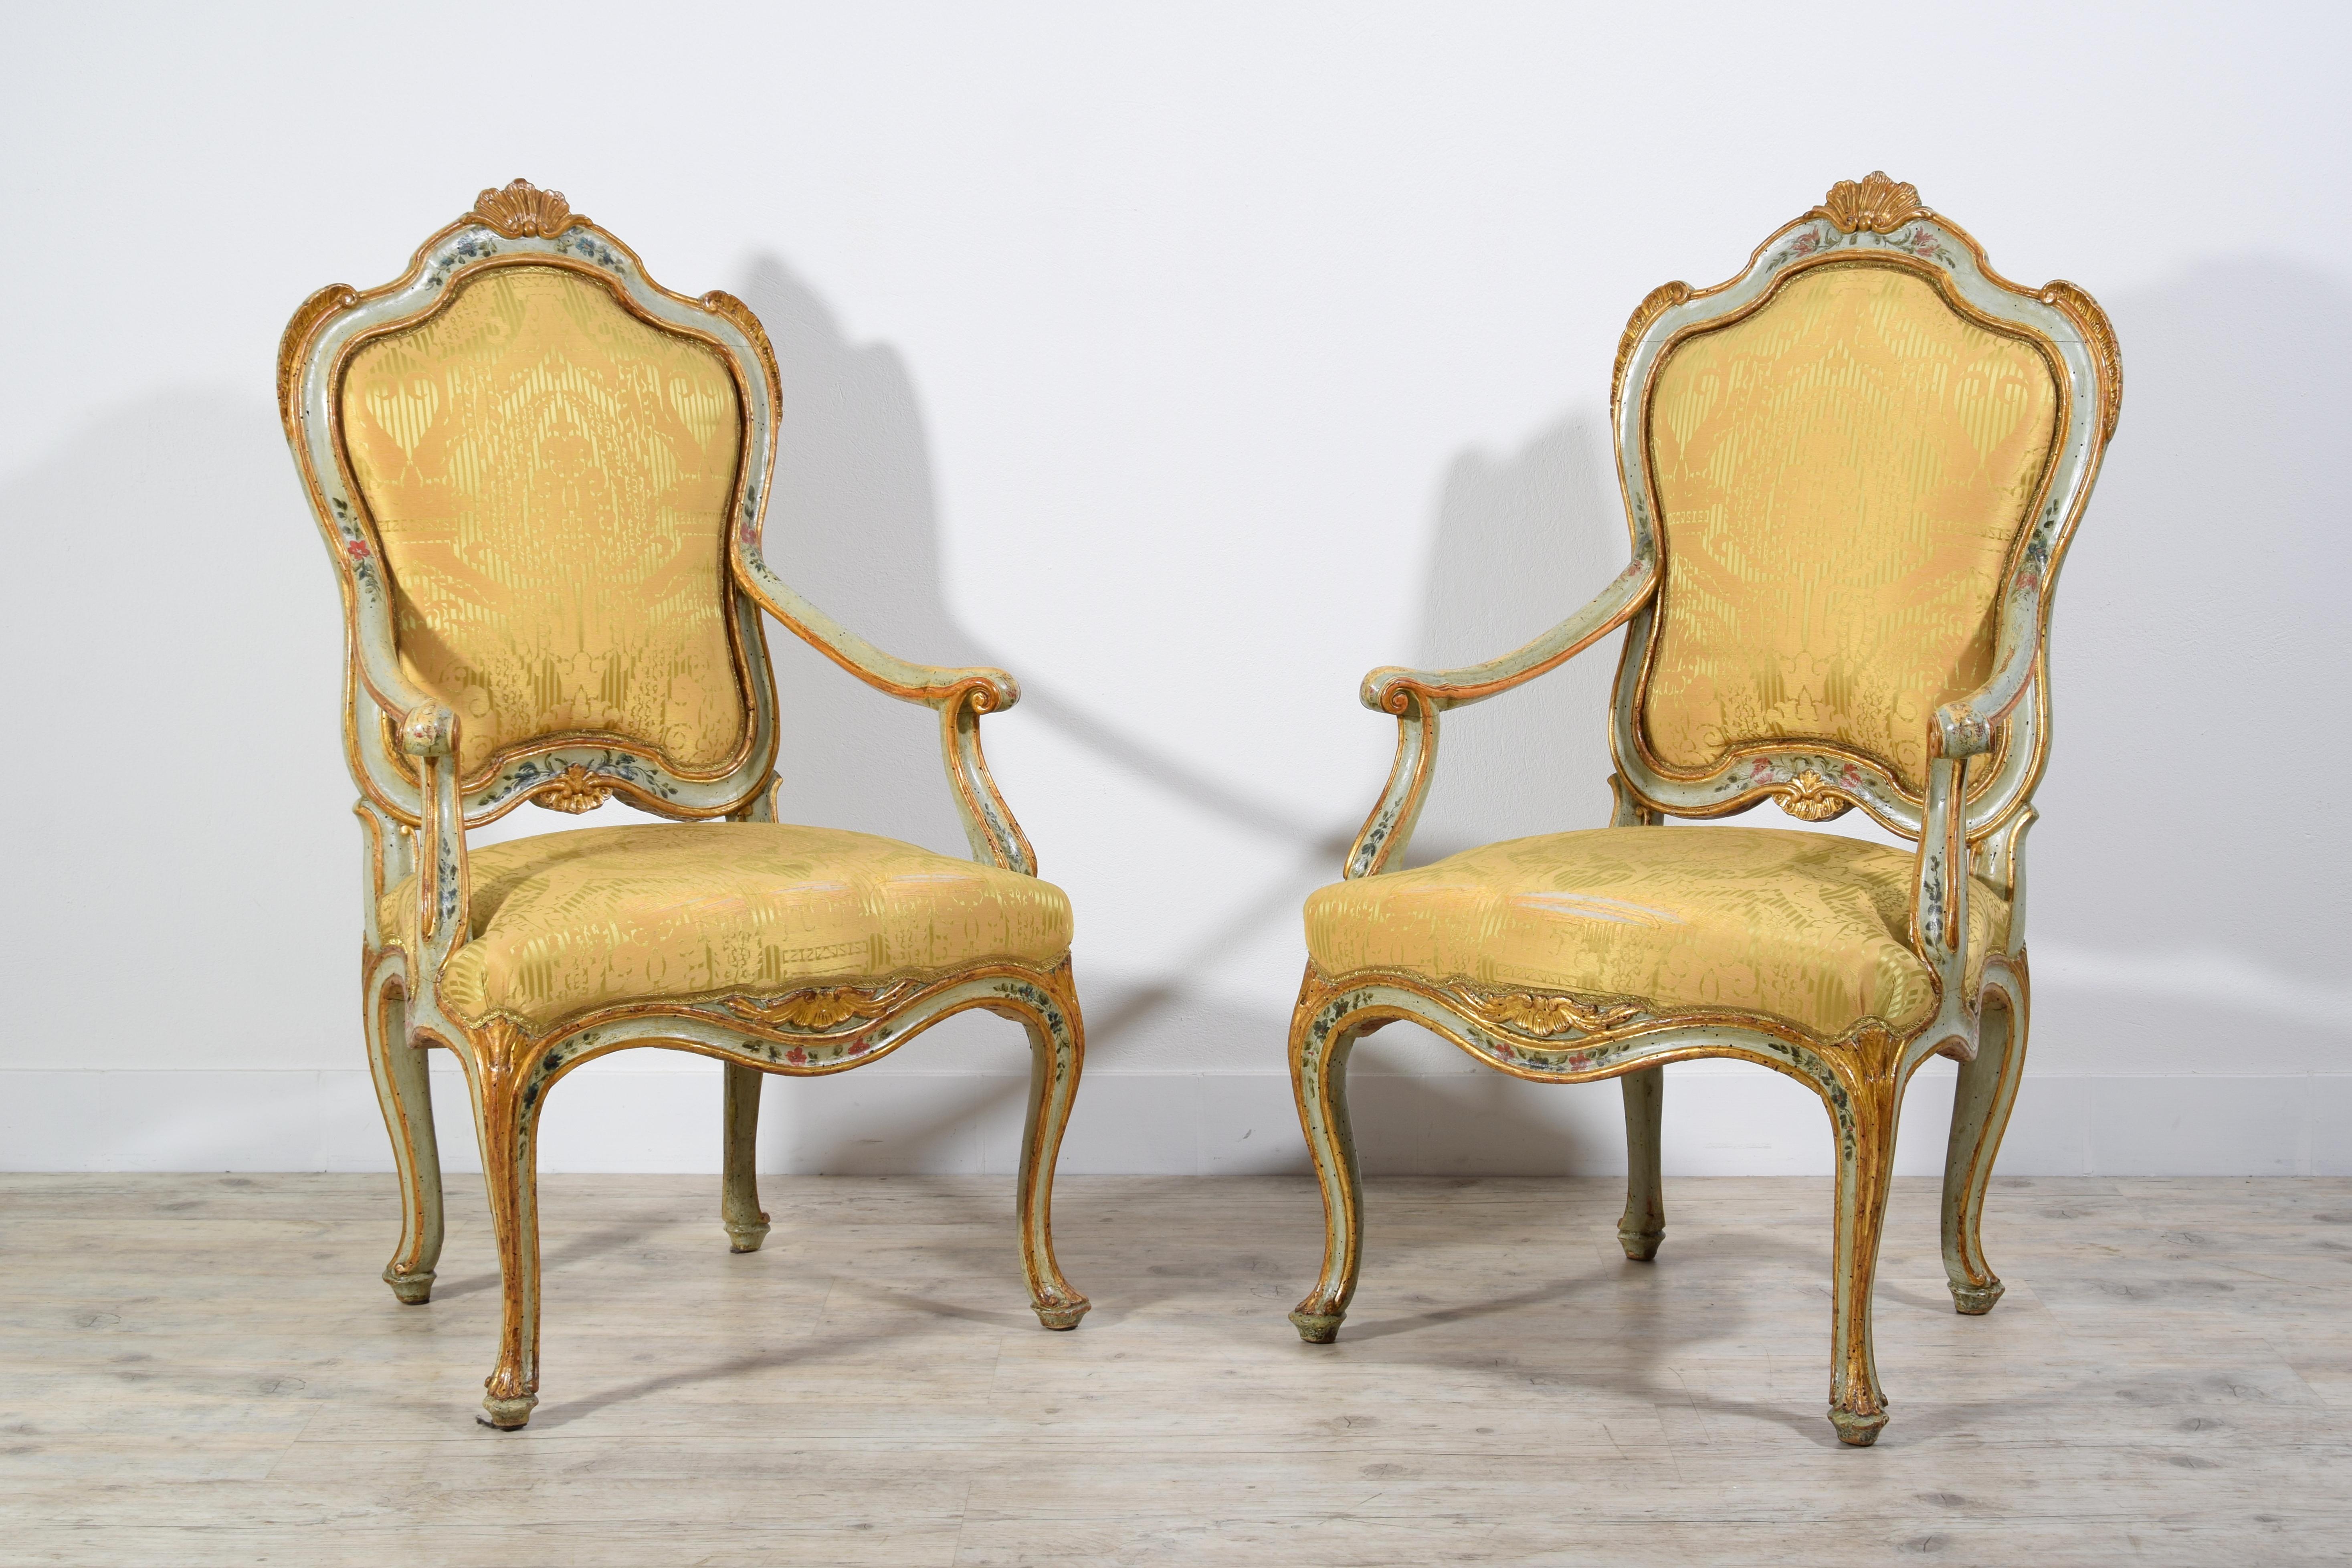 XVIIIe siècle, Paire de fauteuils Barocchetto en bois doré laqué vénitien

Cette paire de fauteuils raffinée et importante a été réalisée vers le milieu du XVIIIe siècle à Venise, en Italie, en bois sculpté, laqué et doré et reflète les dictats